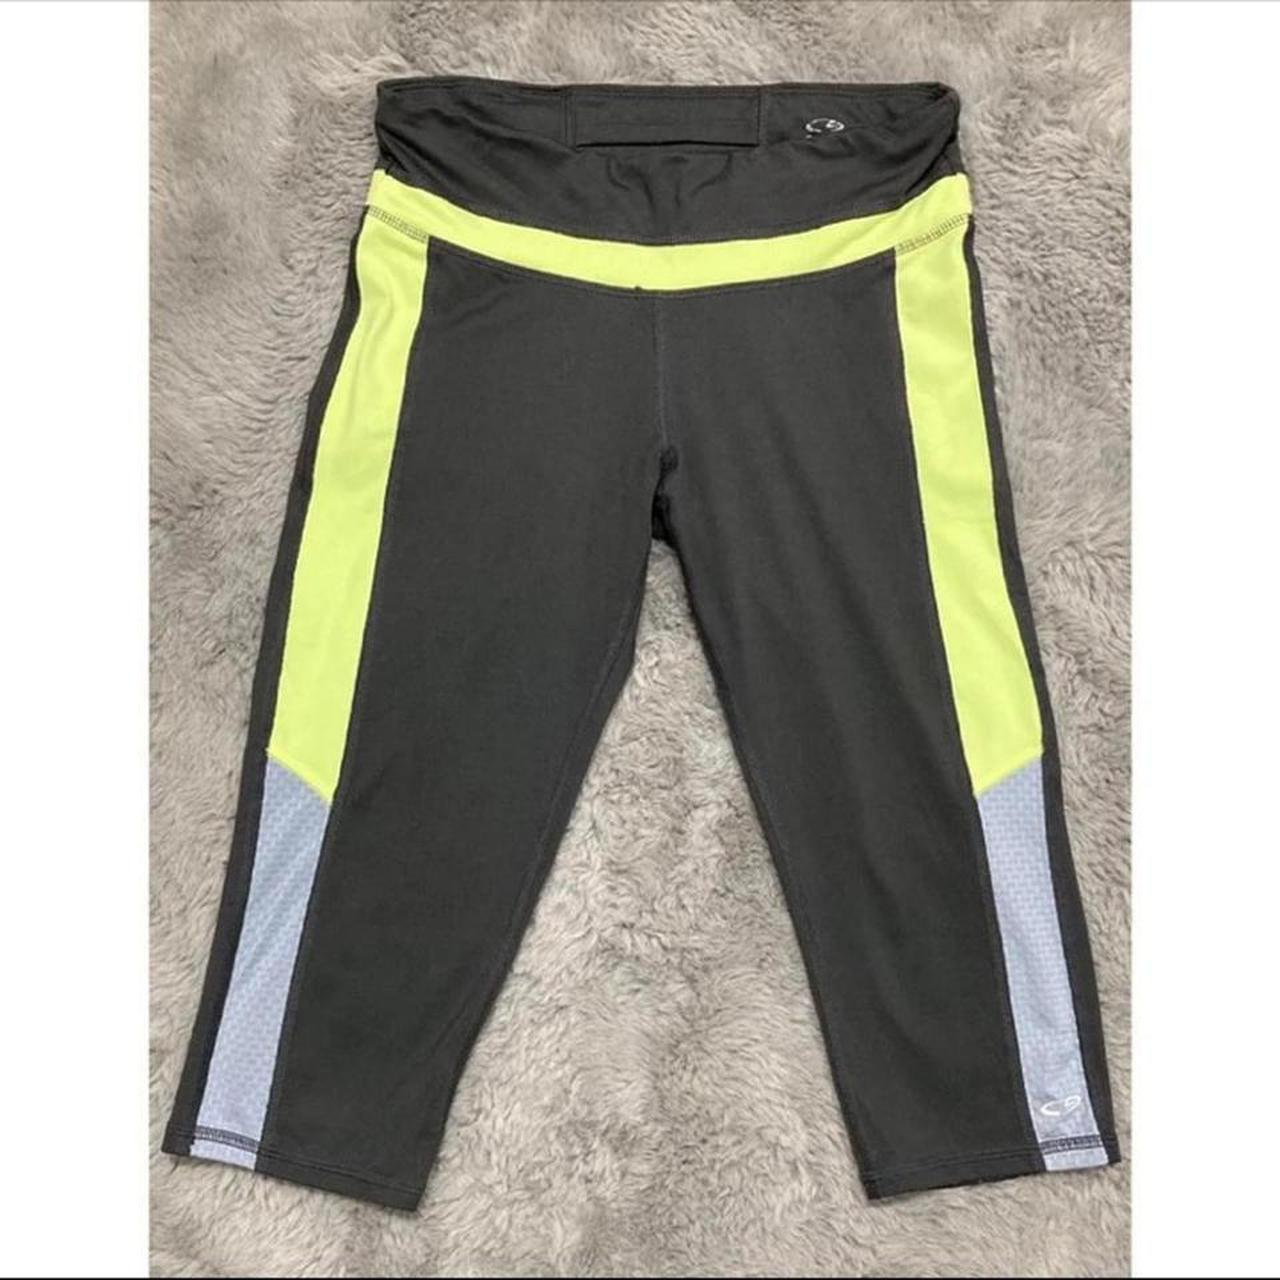 Champion Duo Dry Athletic Pants Capri Leggings Black and Gray